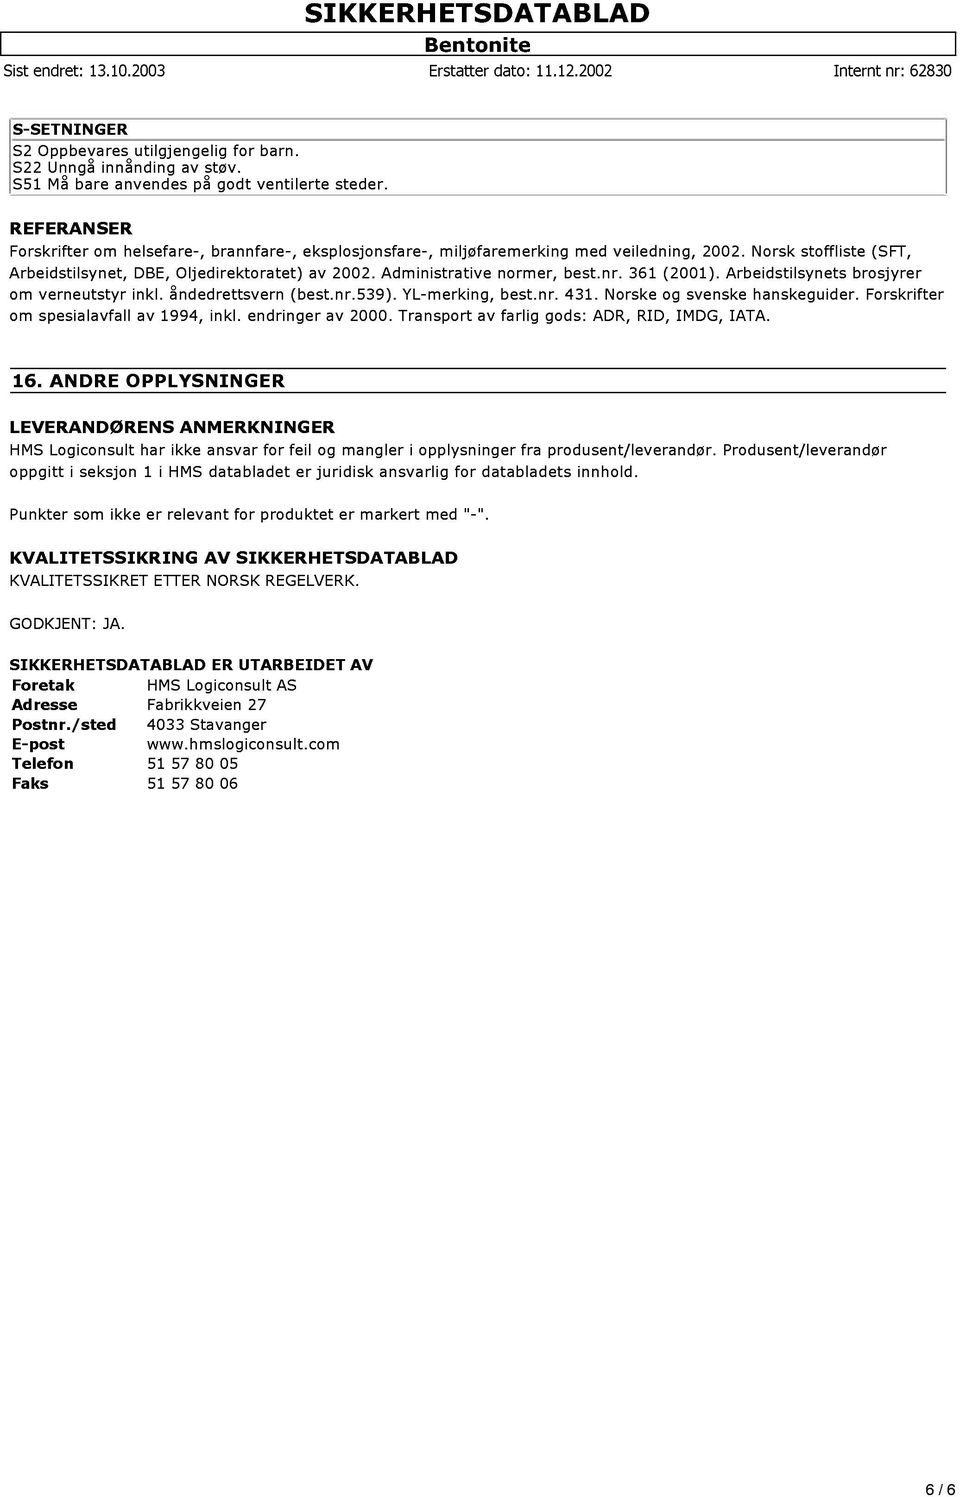 Norsk stoffliste (SFT, Arbeidstilsynet, DBE, Oljedirektoratet) av 2002. Administrative normer, best.nr. 361 (2001). Arbeidstilsynets brosjyrer om verneutstyr inkl. åndedrettsvern (best.nr.539).